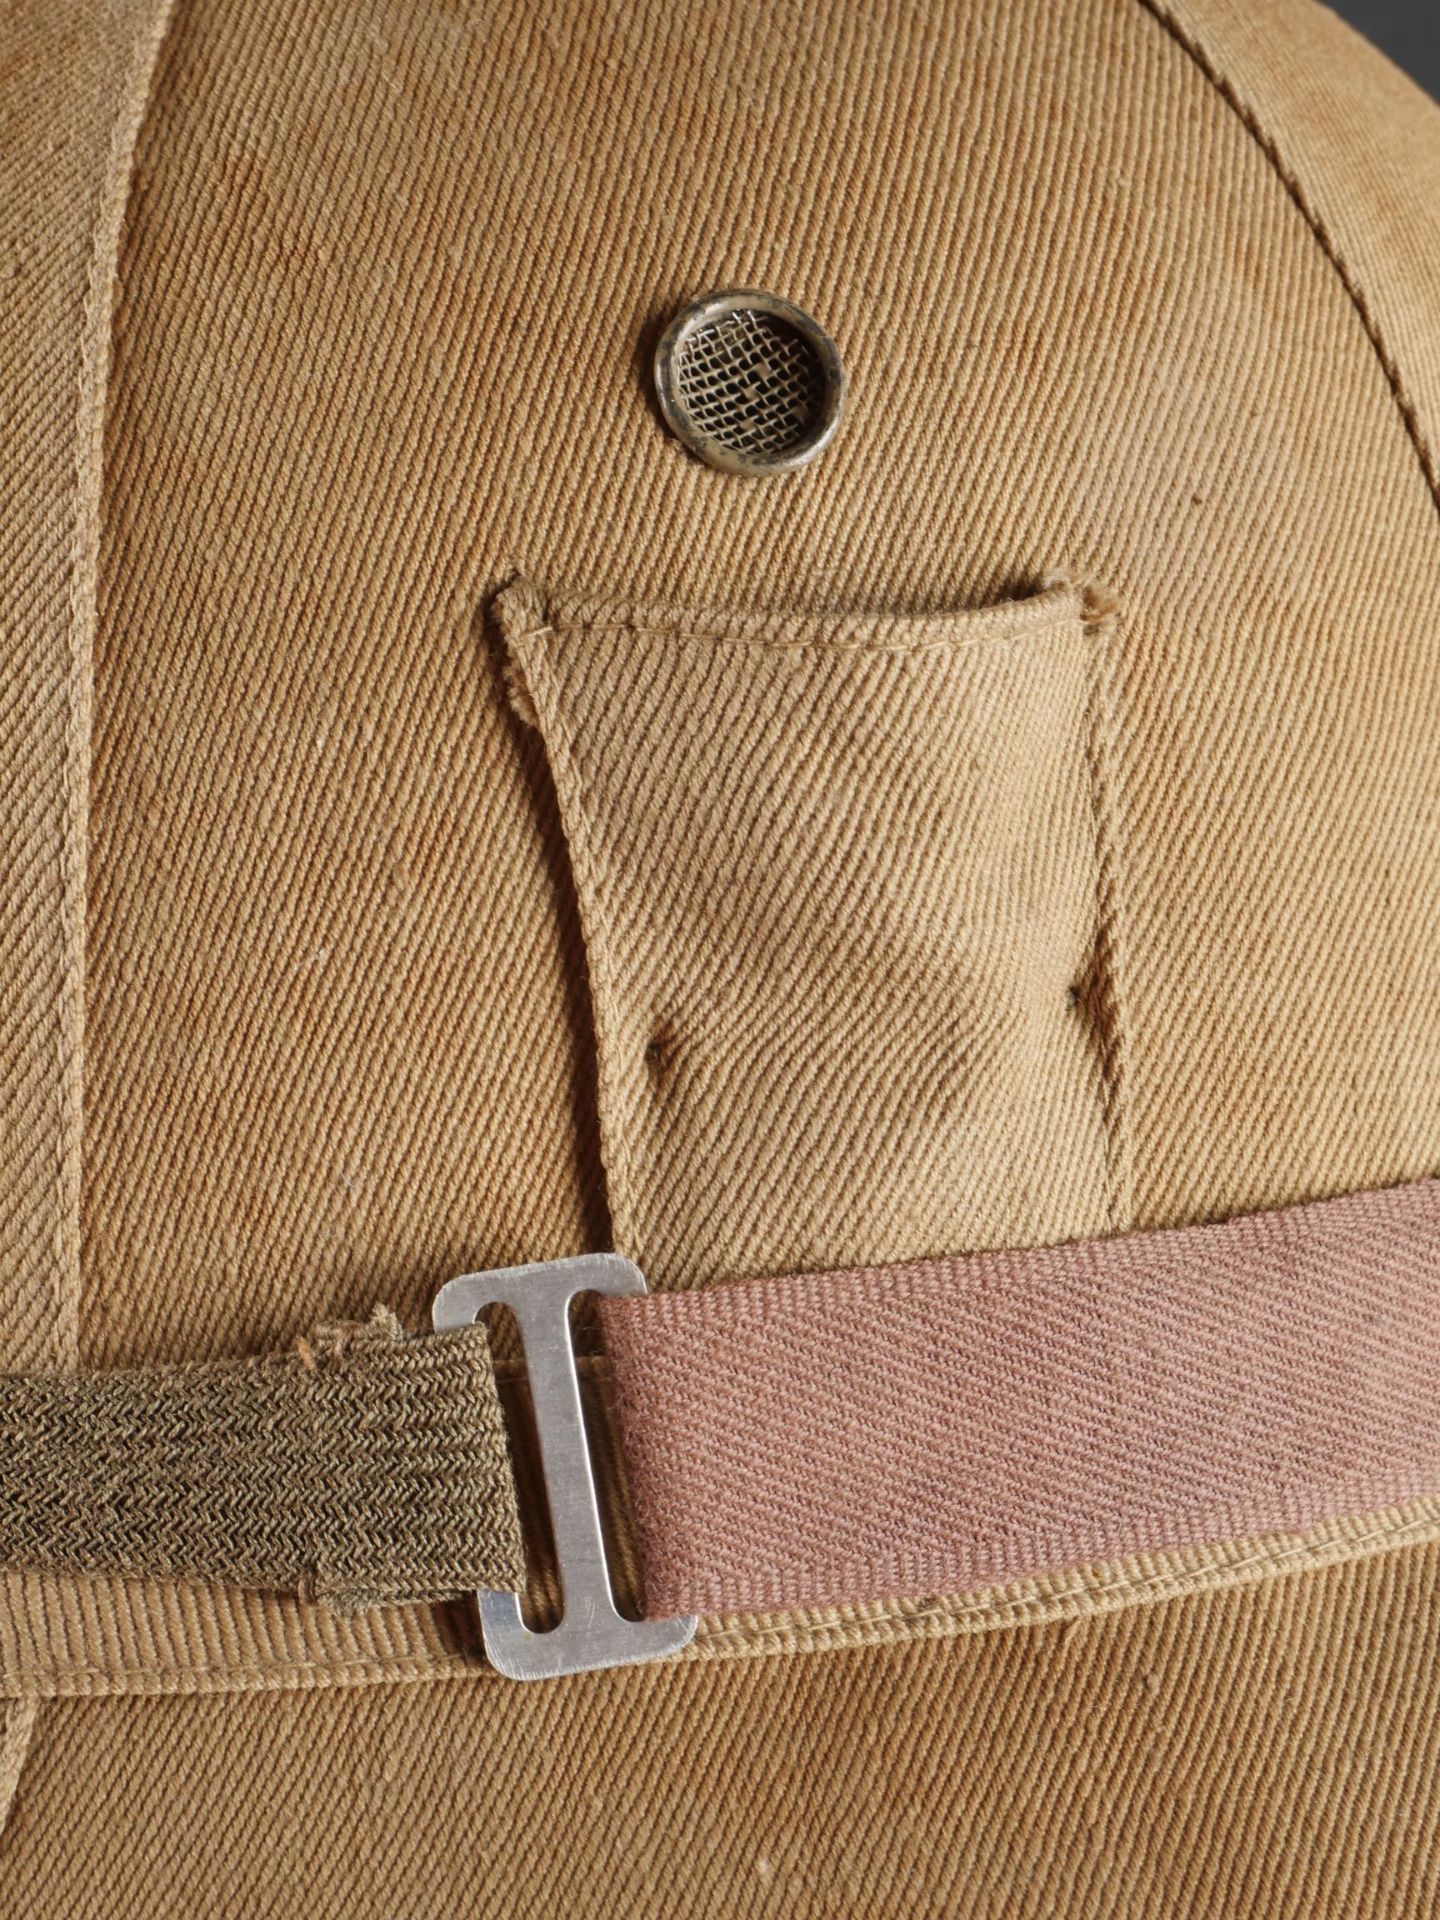 Casque tropicale du 8eme Regiment Bersaglieri. Tropical helmet of the 8th Bersaglieri Regiment. - Image 16 of 19